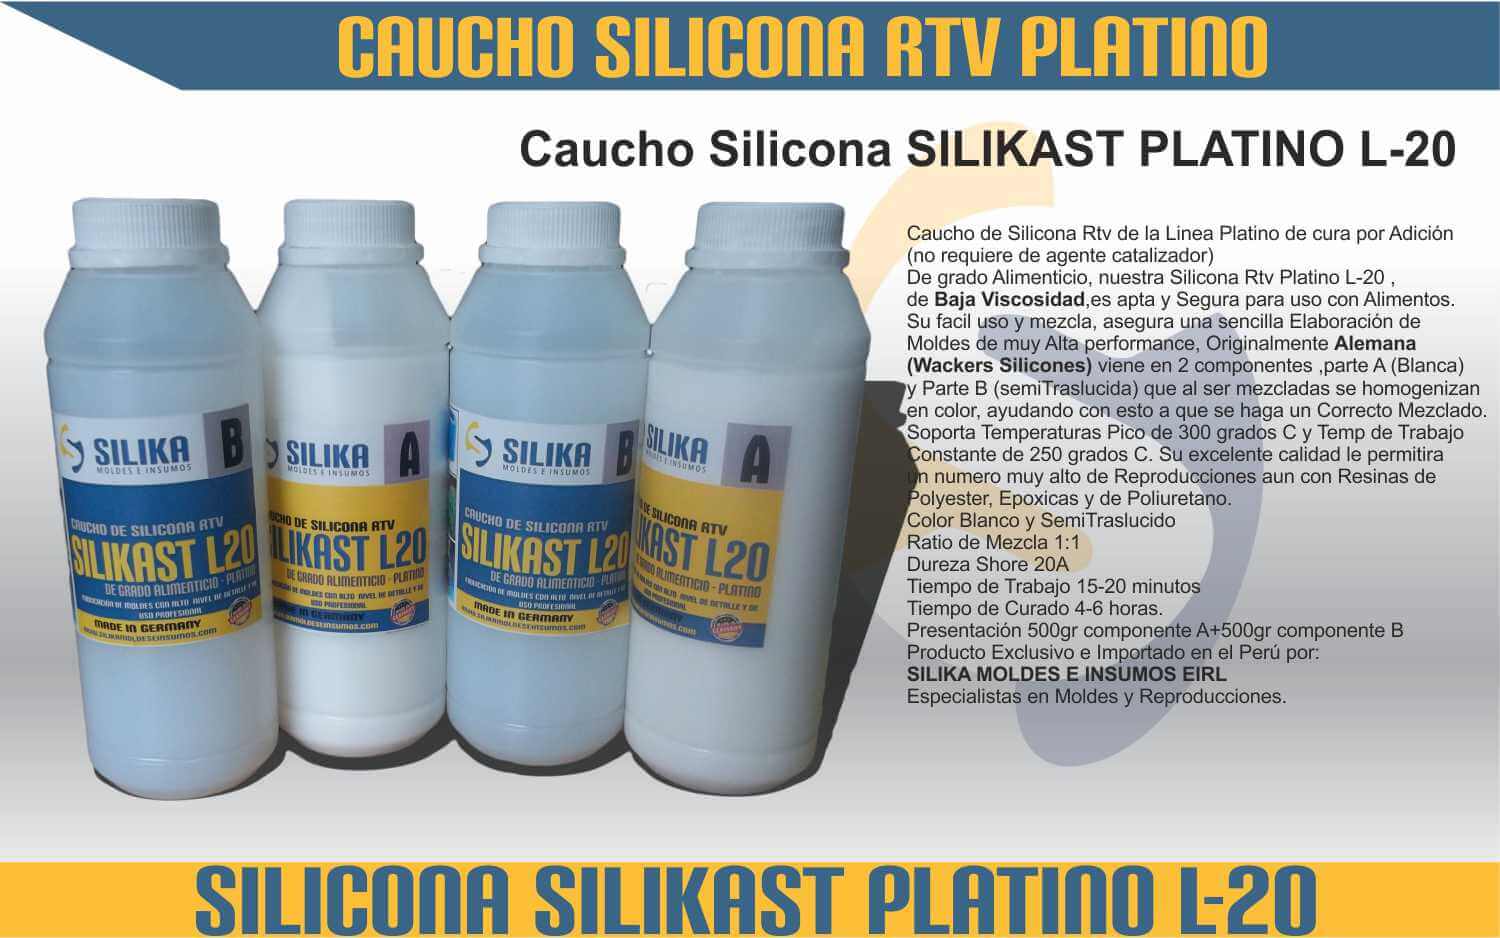 Caucho de Silicona RTV - Silika Moldes e Insumos